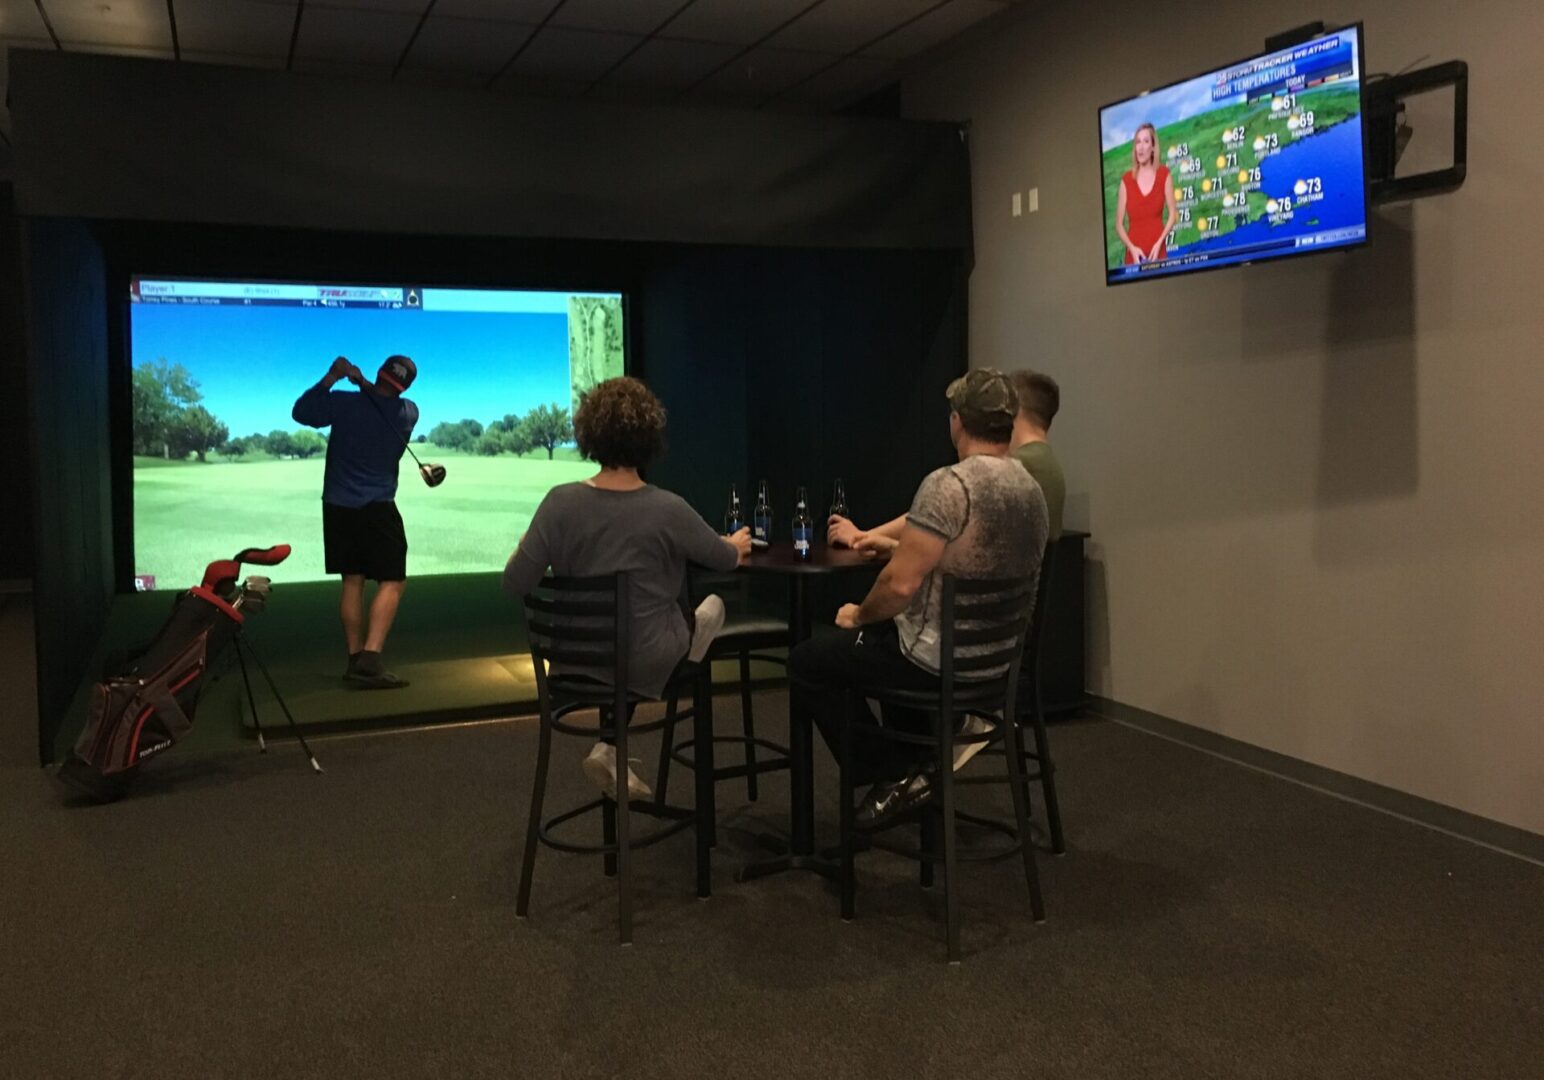 Custom Golf Simulators